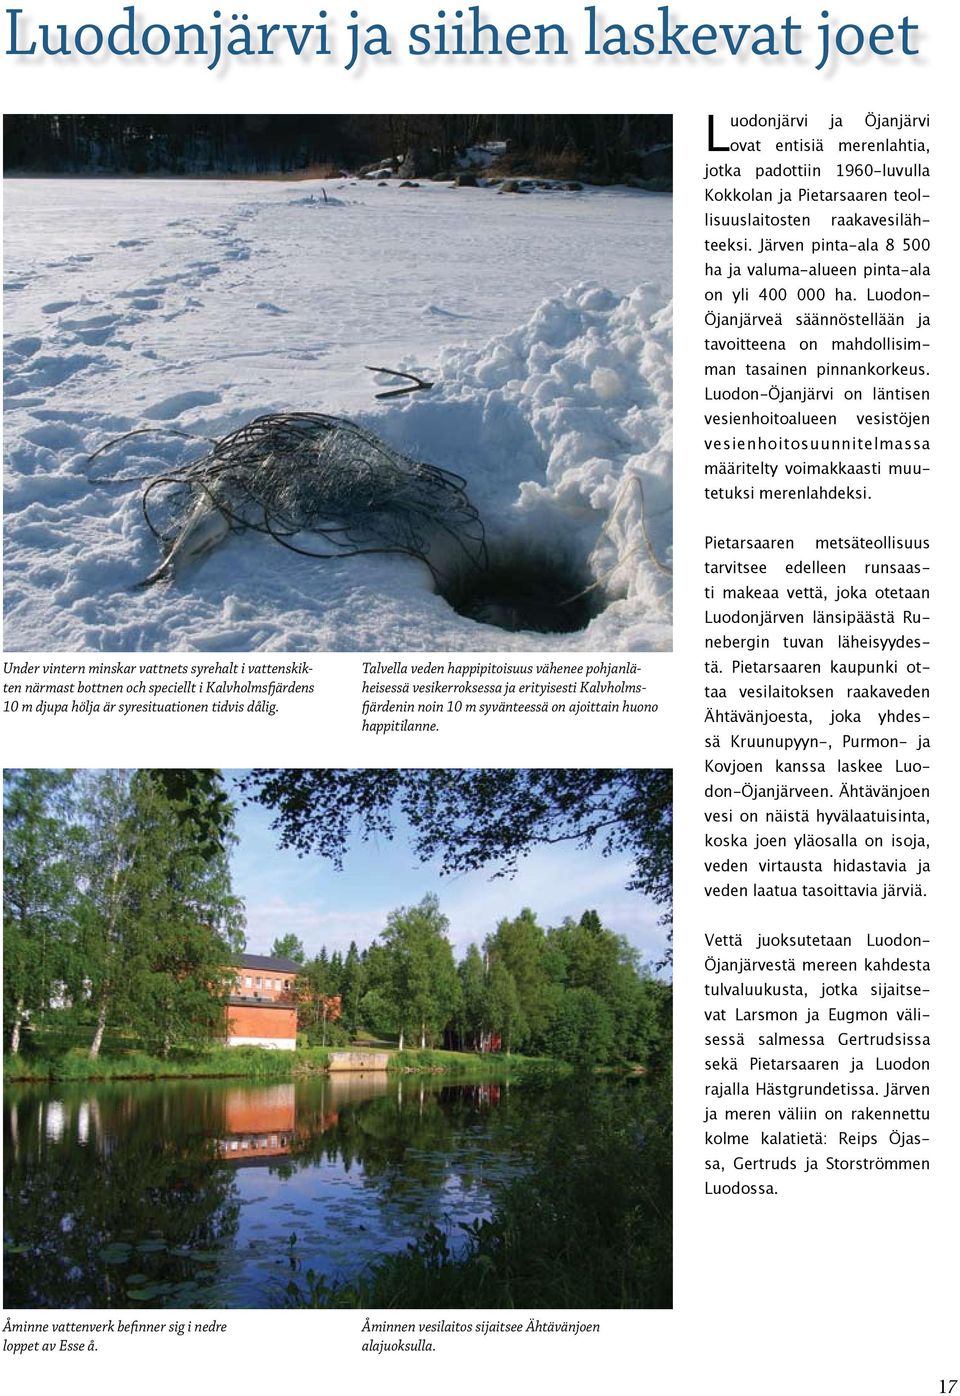 Luodon-Öjanjärvi on läntisen vesienhoitoalueen vesistöjen vesienhoitosuunnitelmassa määritelty voimakkaasti muutetuksi merenlahdeksi.